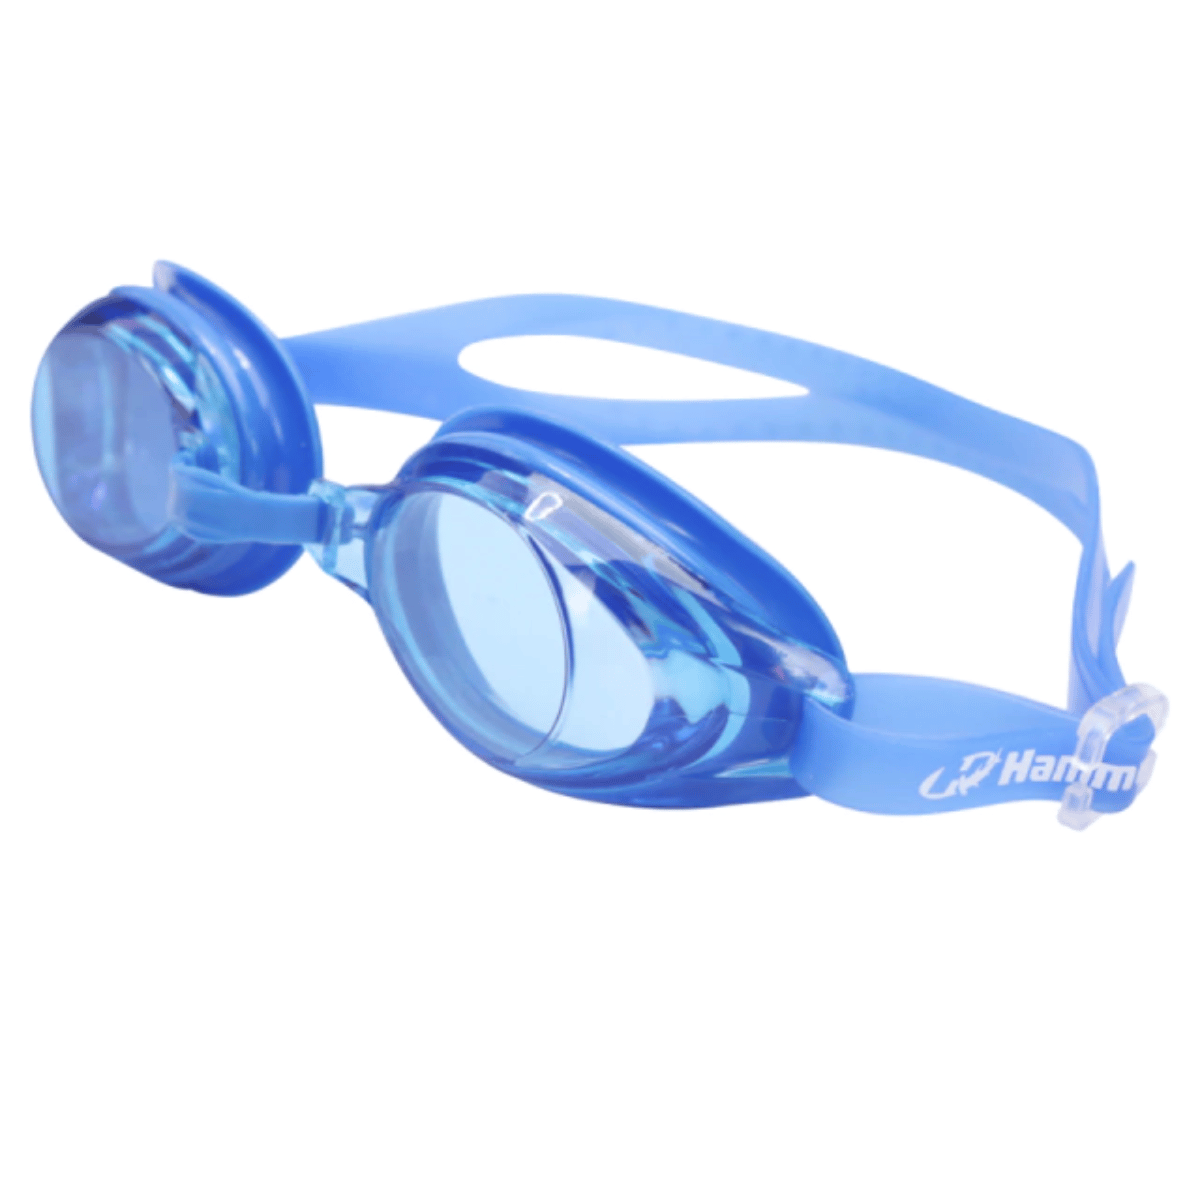 Óculos de Natação Aqua 2.0 com Narigueira - Hammerhead - Loja do Competidor